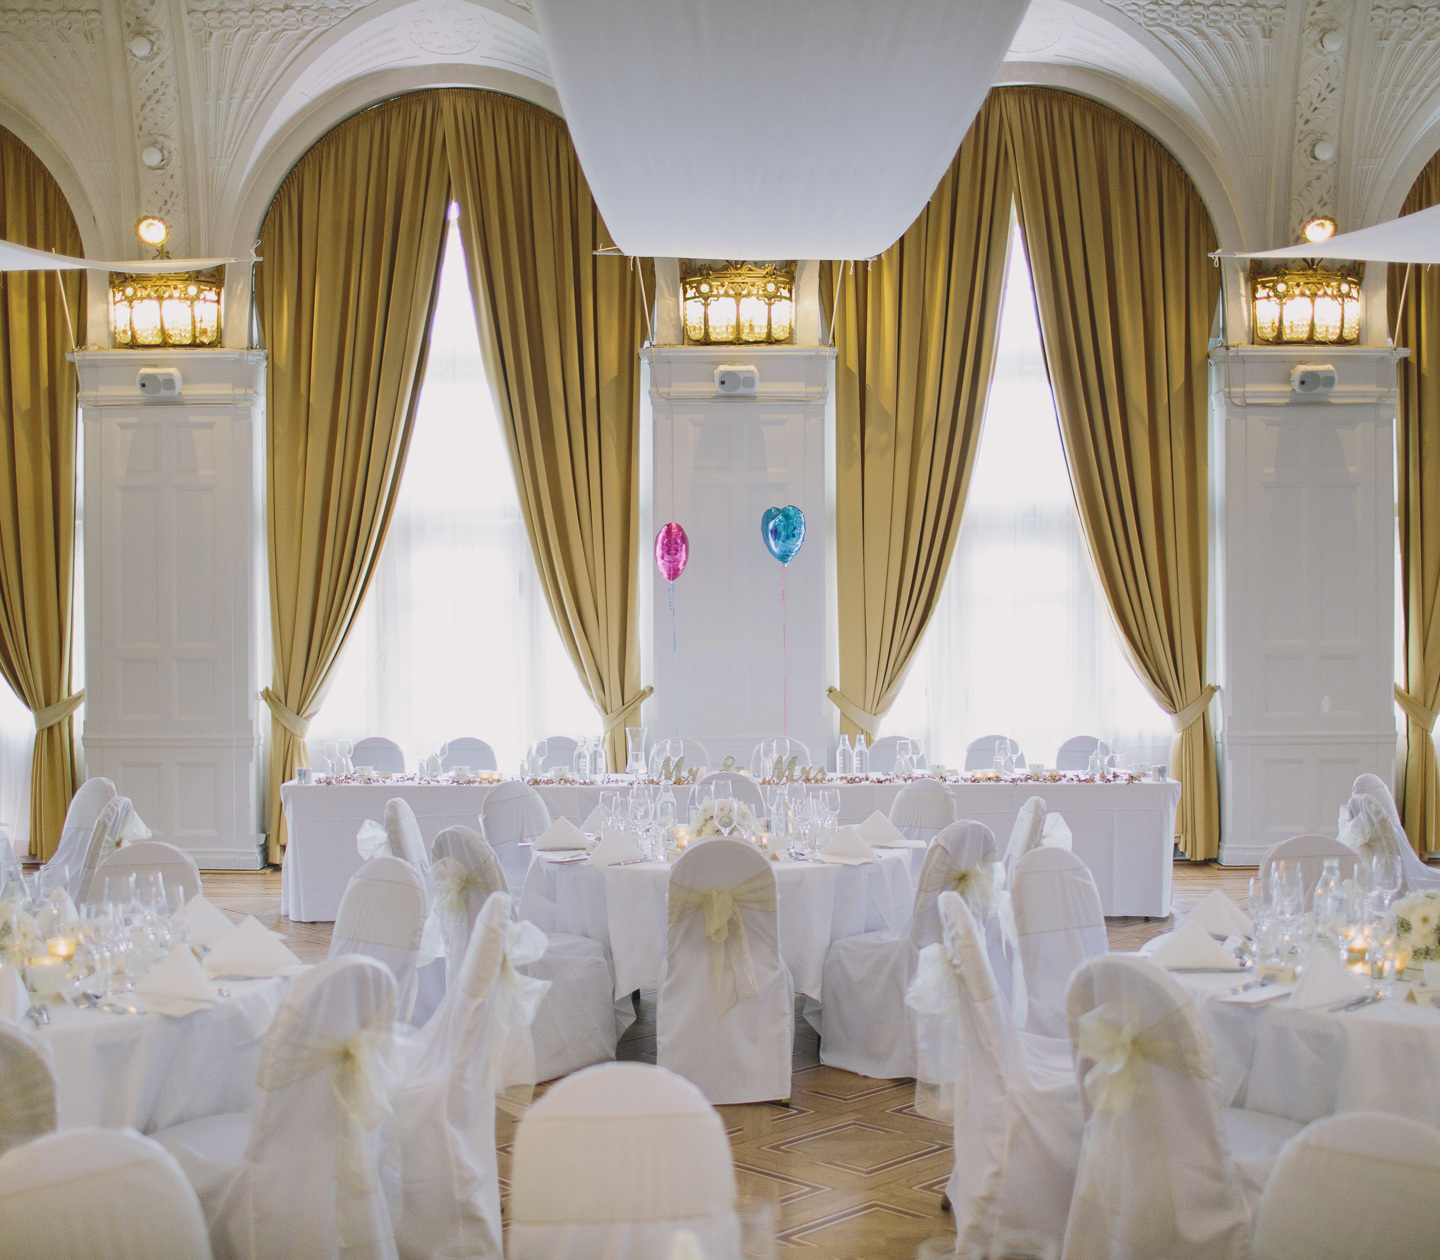 Pampig bröllopslokal med stora fönster och guldgula gardiner